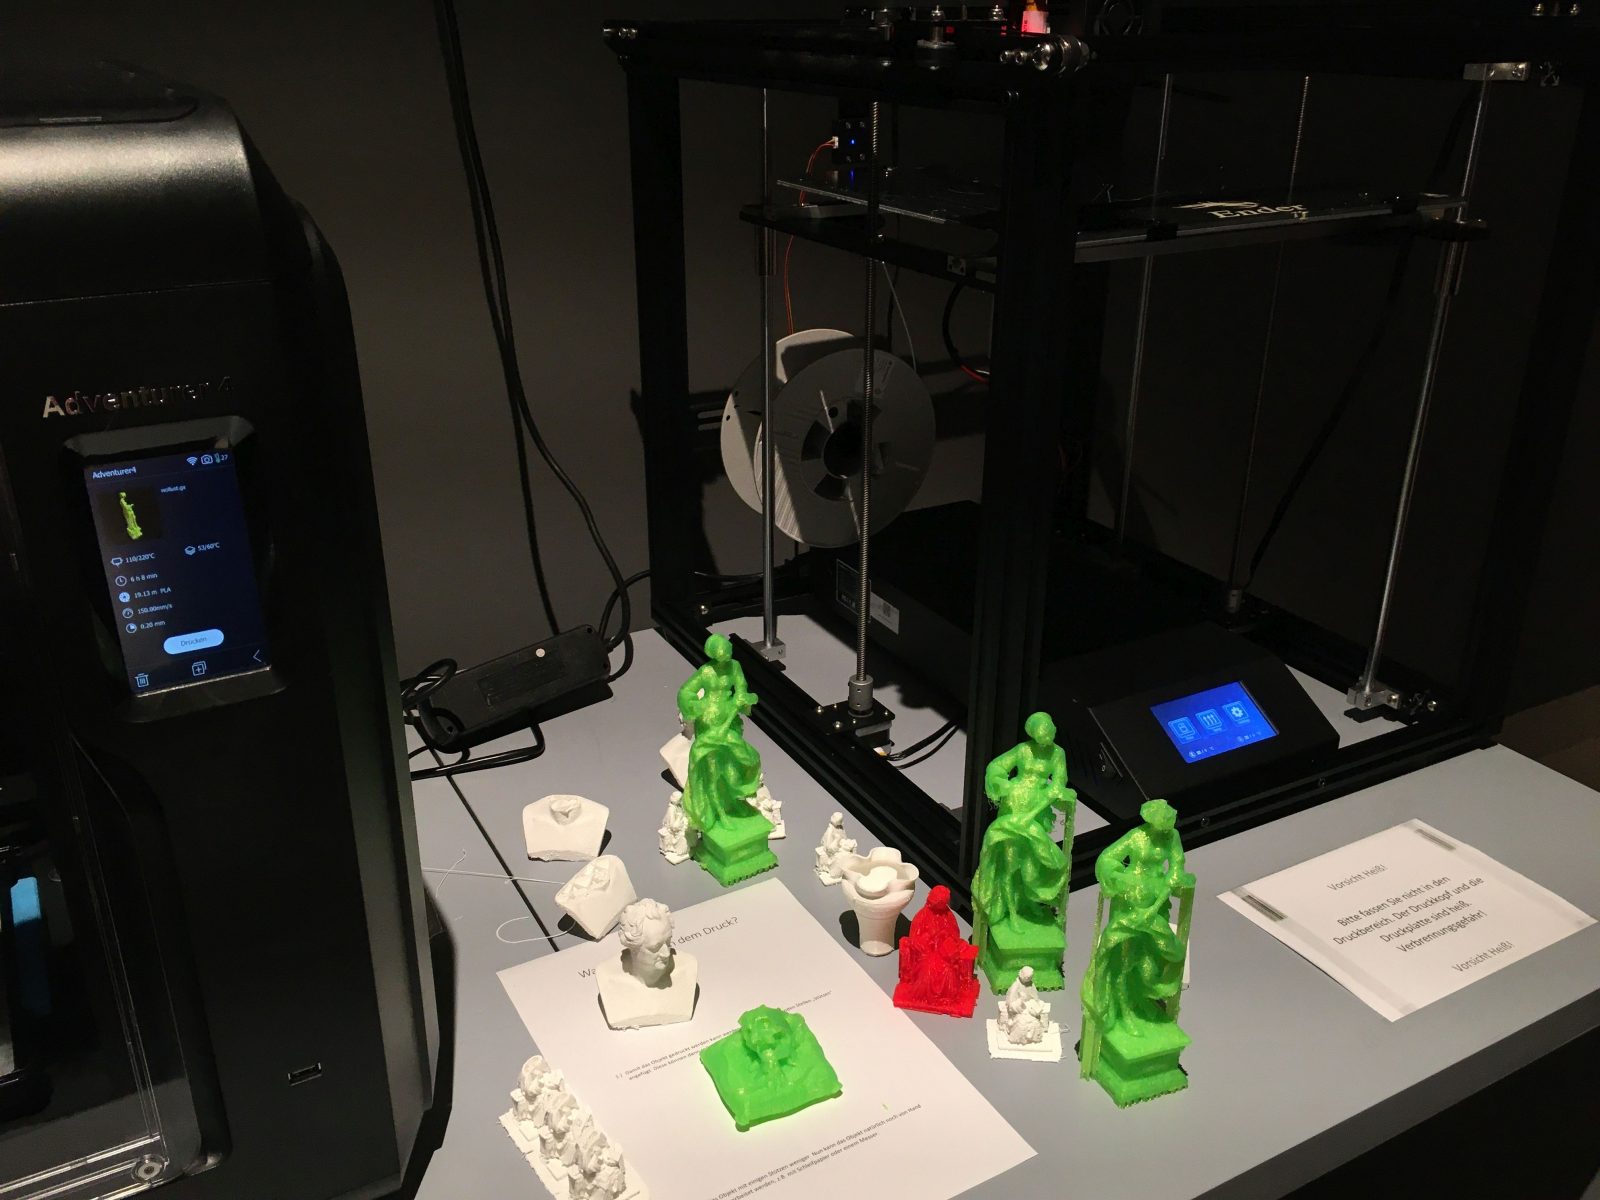 Zwei 3D-Drucker mit verschiedenfarbigen kleinen 3D-Drucken.